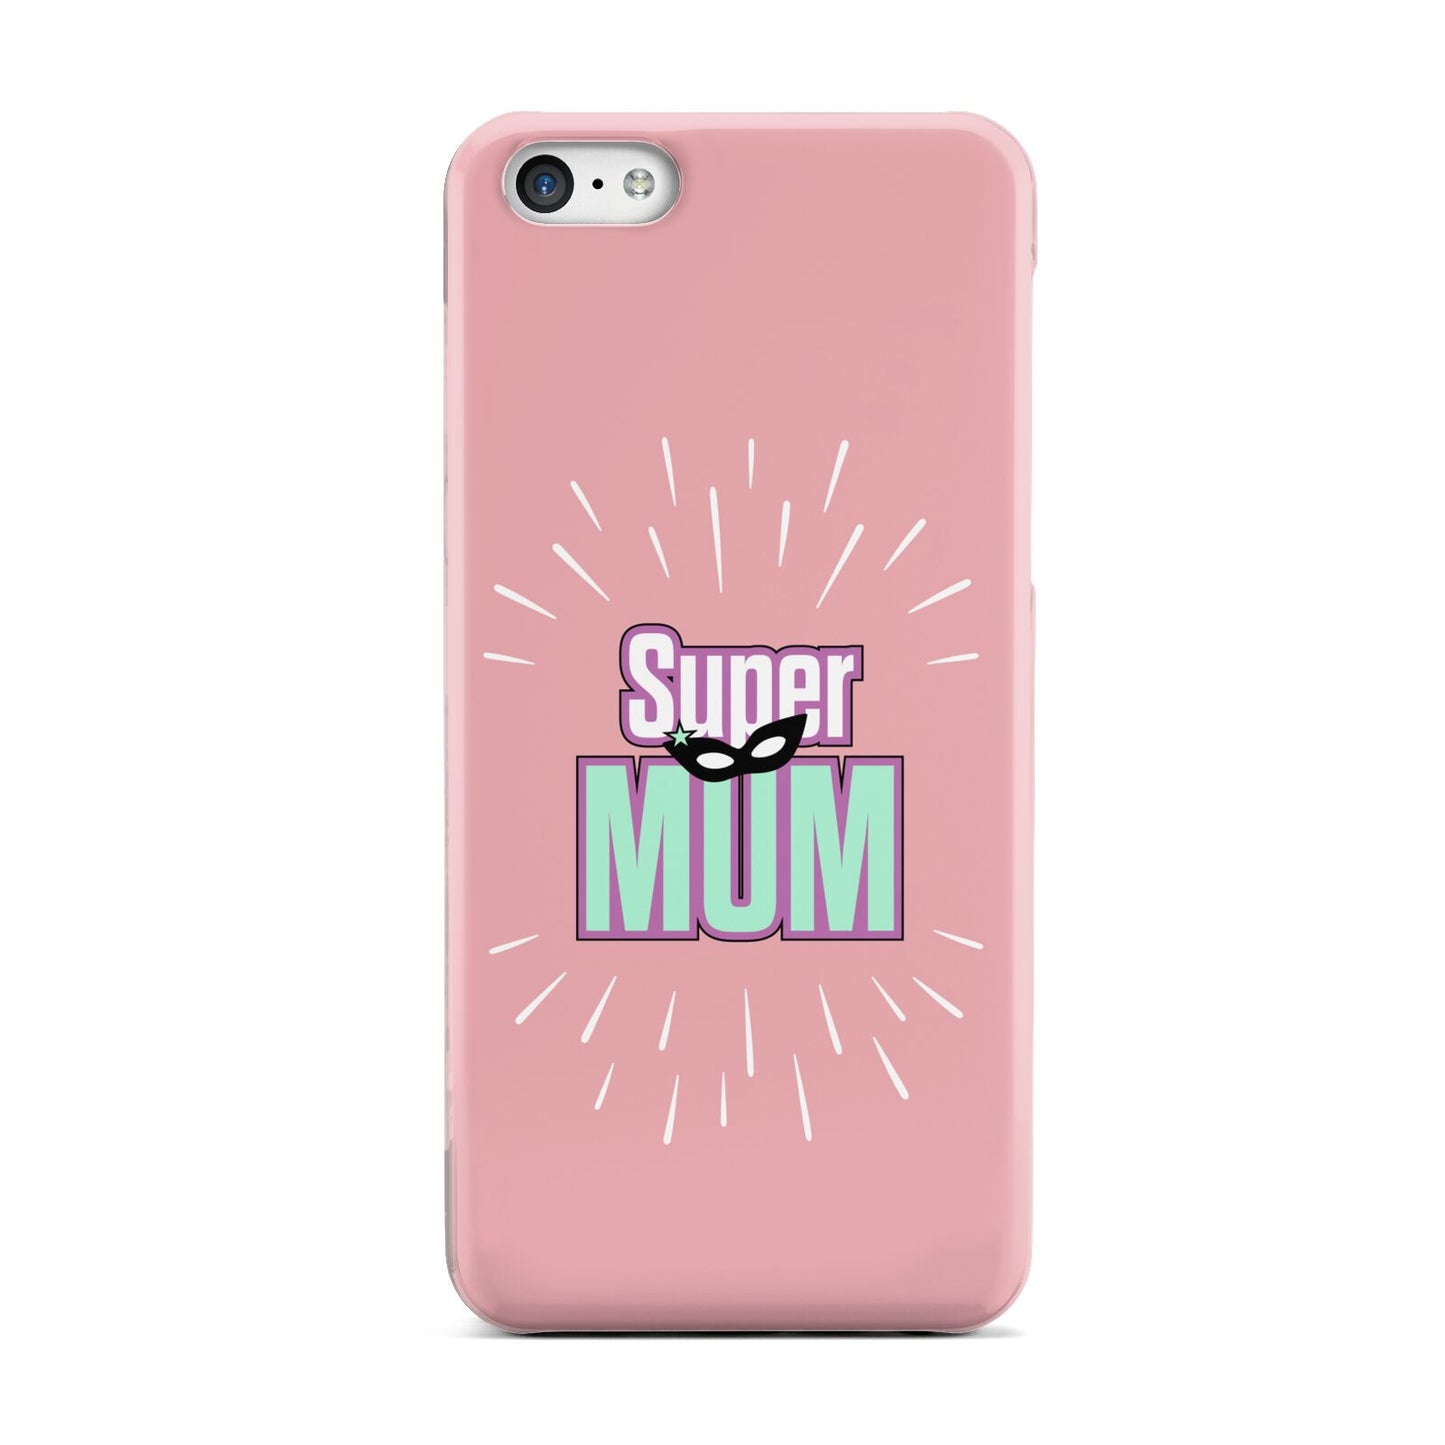 Super Mum Mothers Day Apple iPhone 5c Case